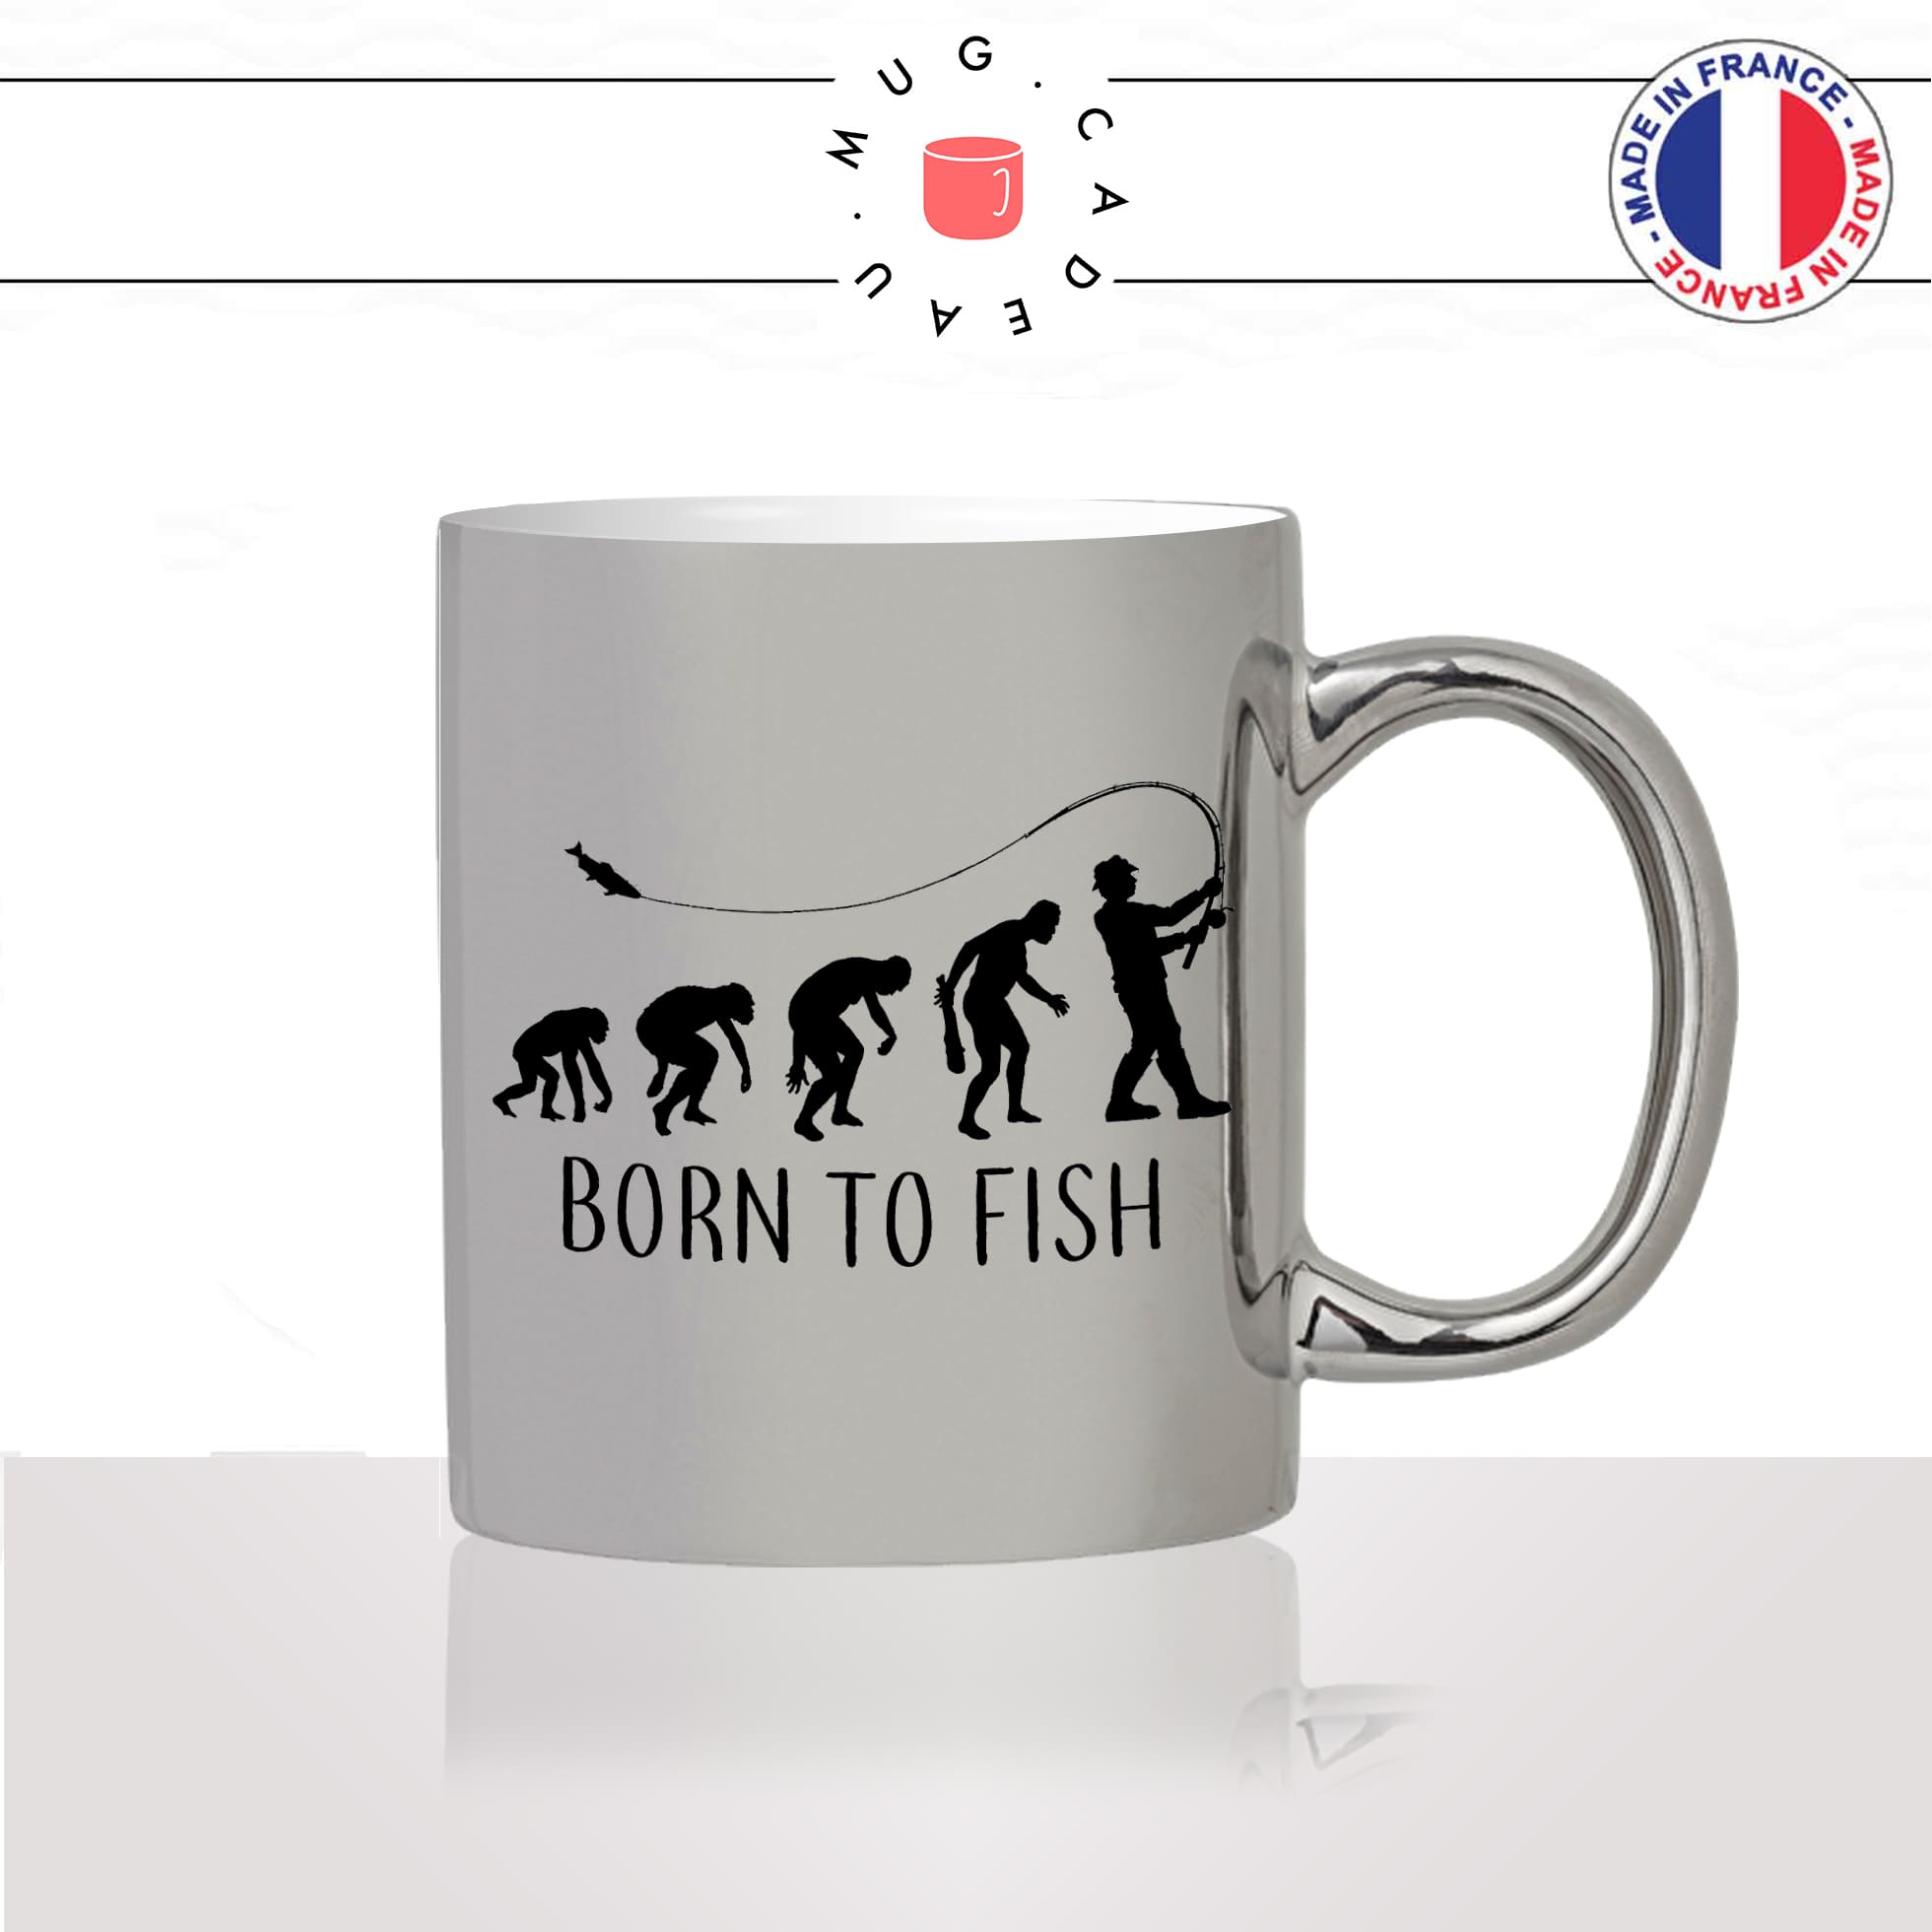 mug-tasse-argent-argenté-silver-born-to-fish-evolution-humaine-singe-peche-pecheur-poisson-humour-idée-cadeau-fun-cool-café-thé2